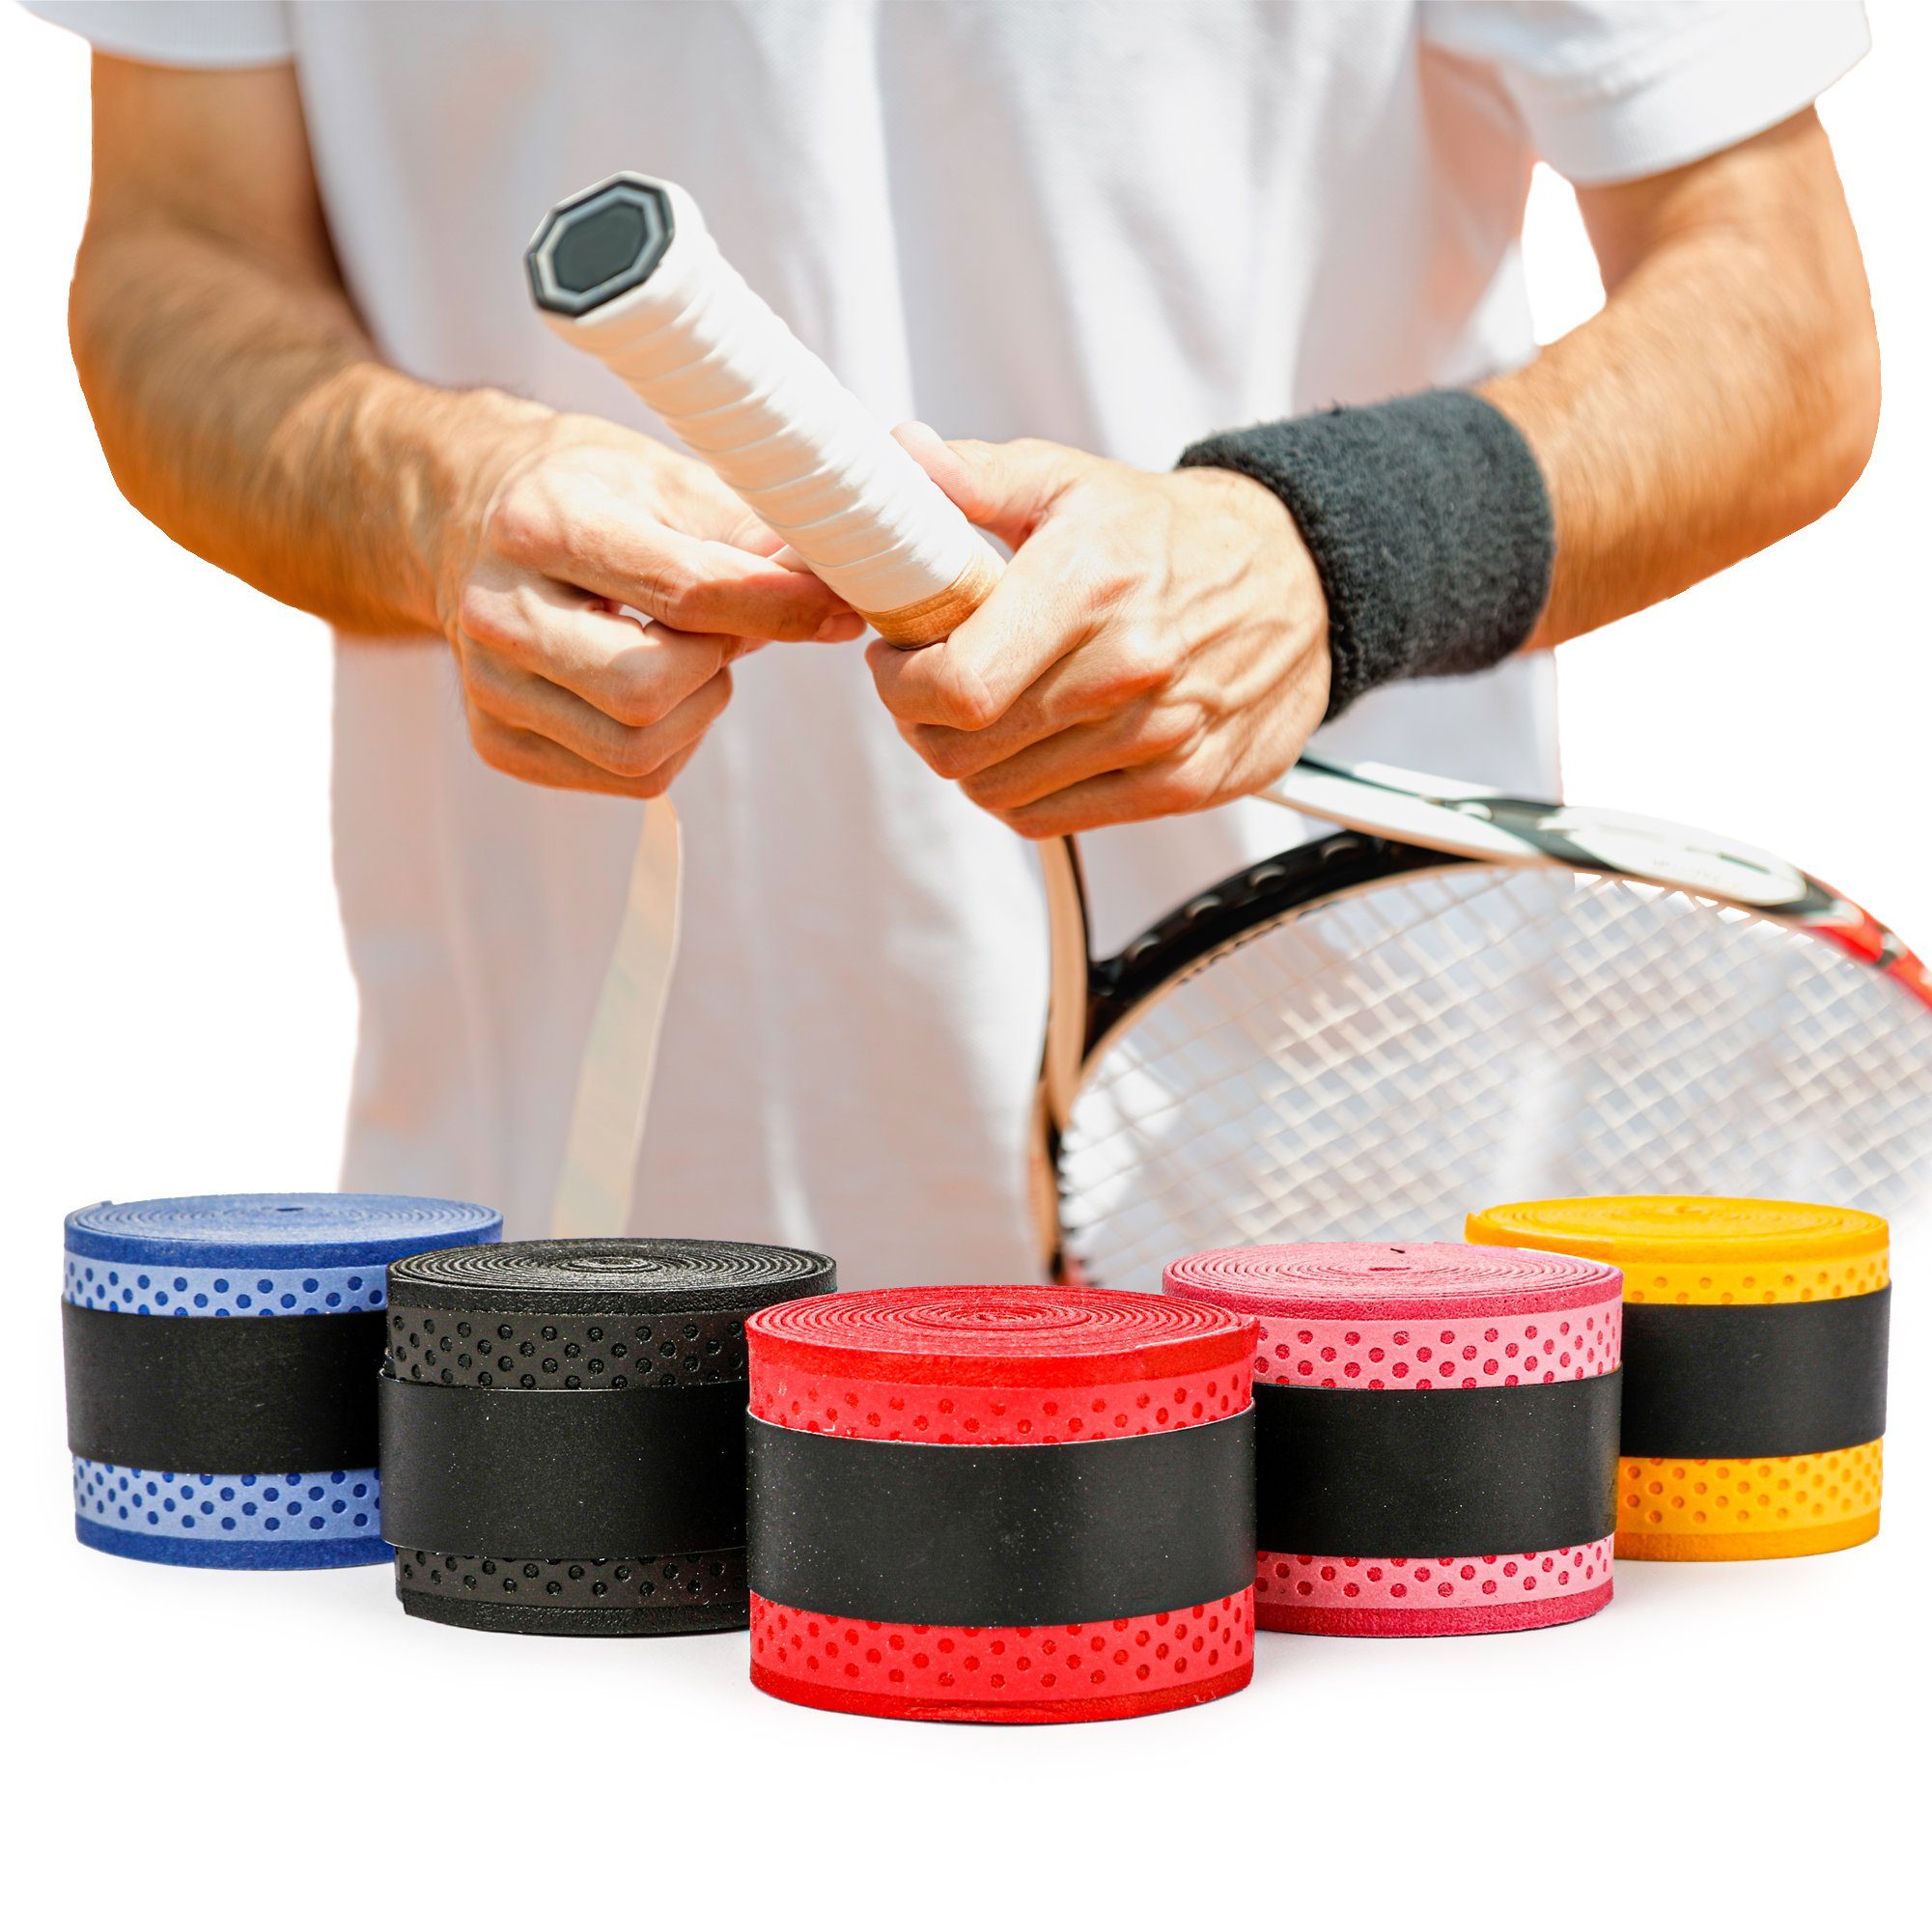 60 Stk Griffband Griffbänder Klebeband Tennis Schläger Badminton Anti Slip NI 